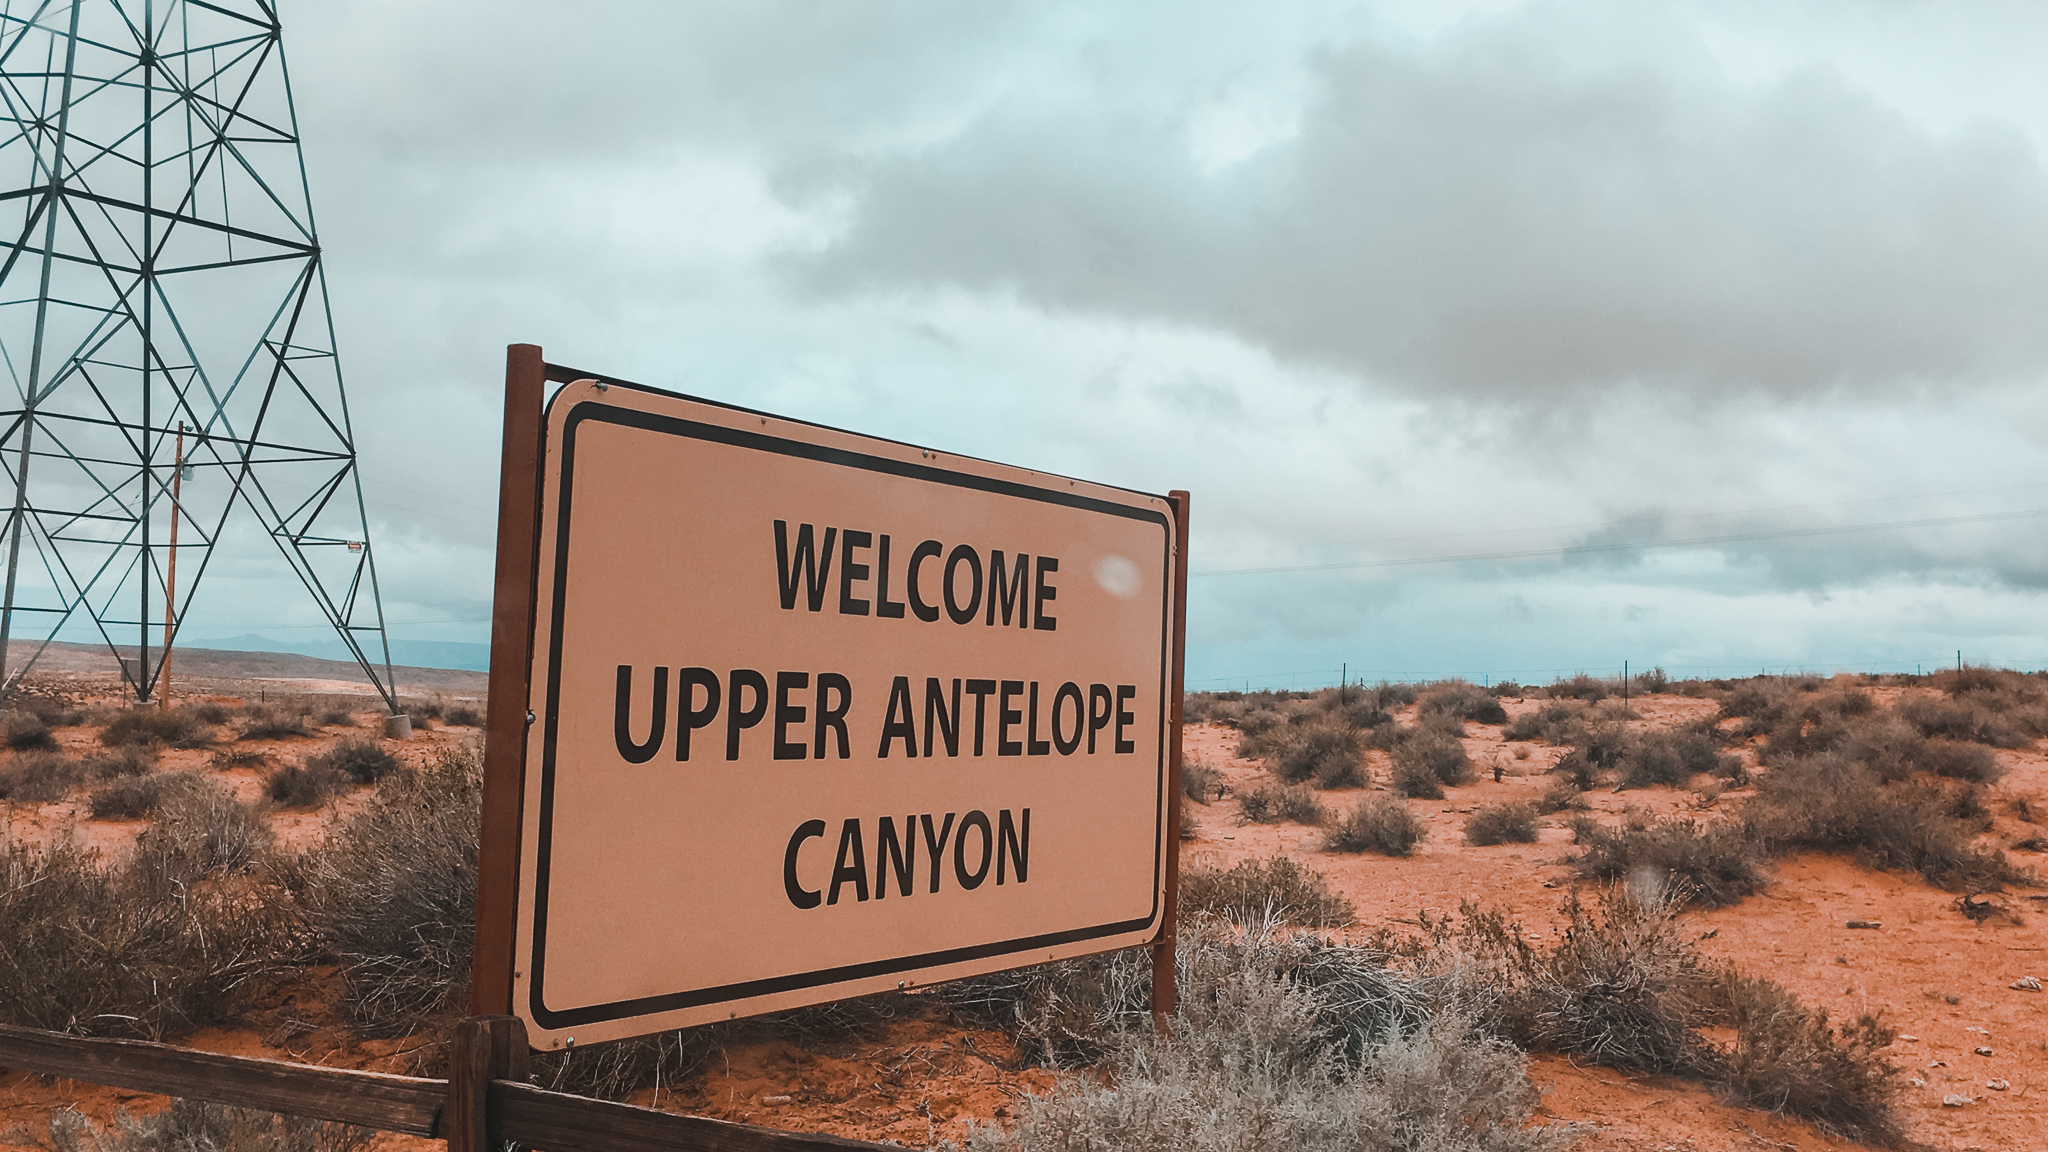 Visitare l'Antelope Canyon: tutte le informazioni utili.